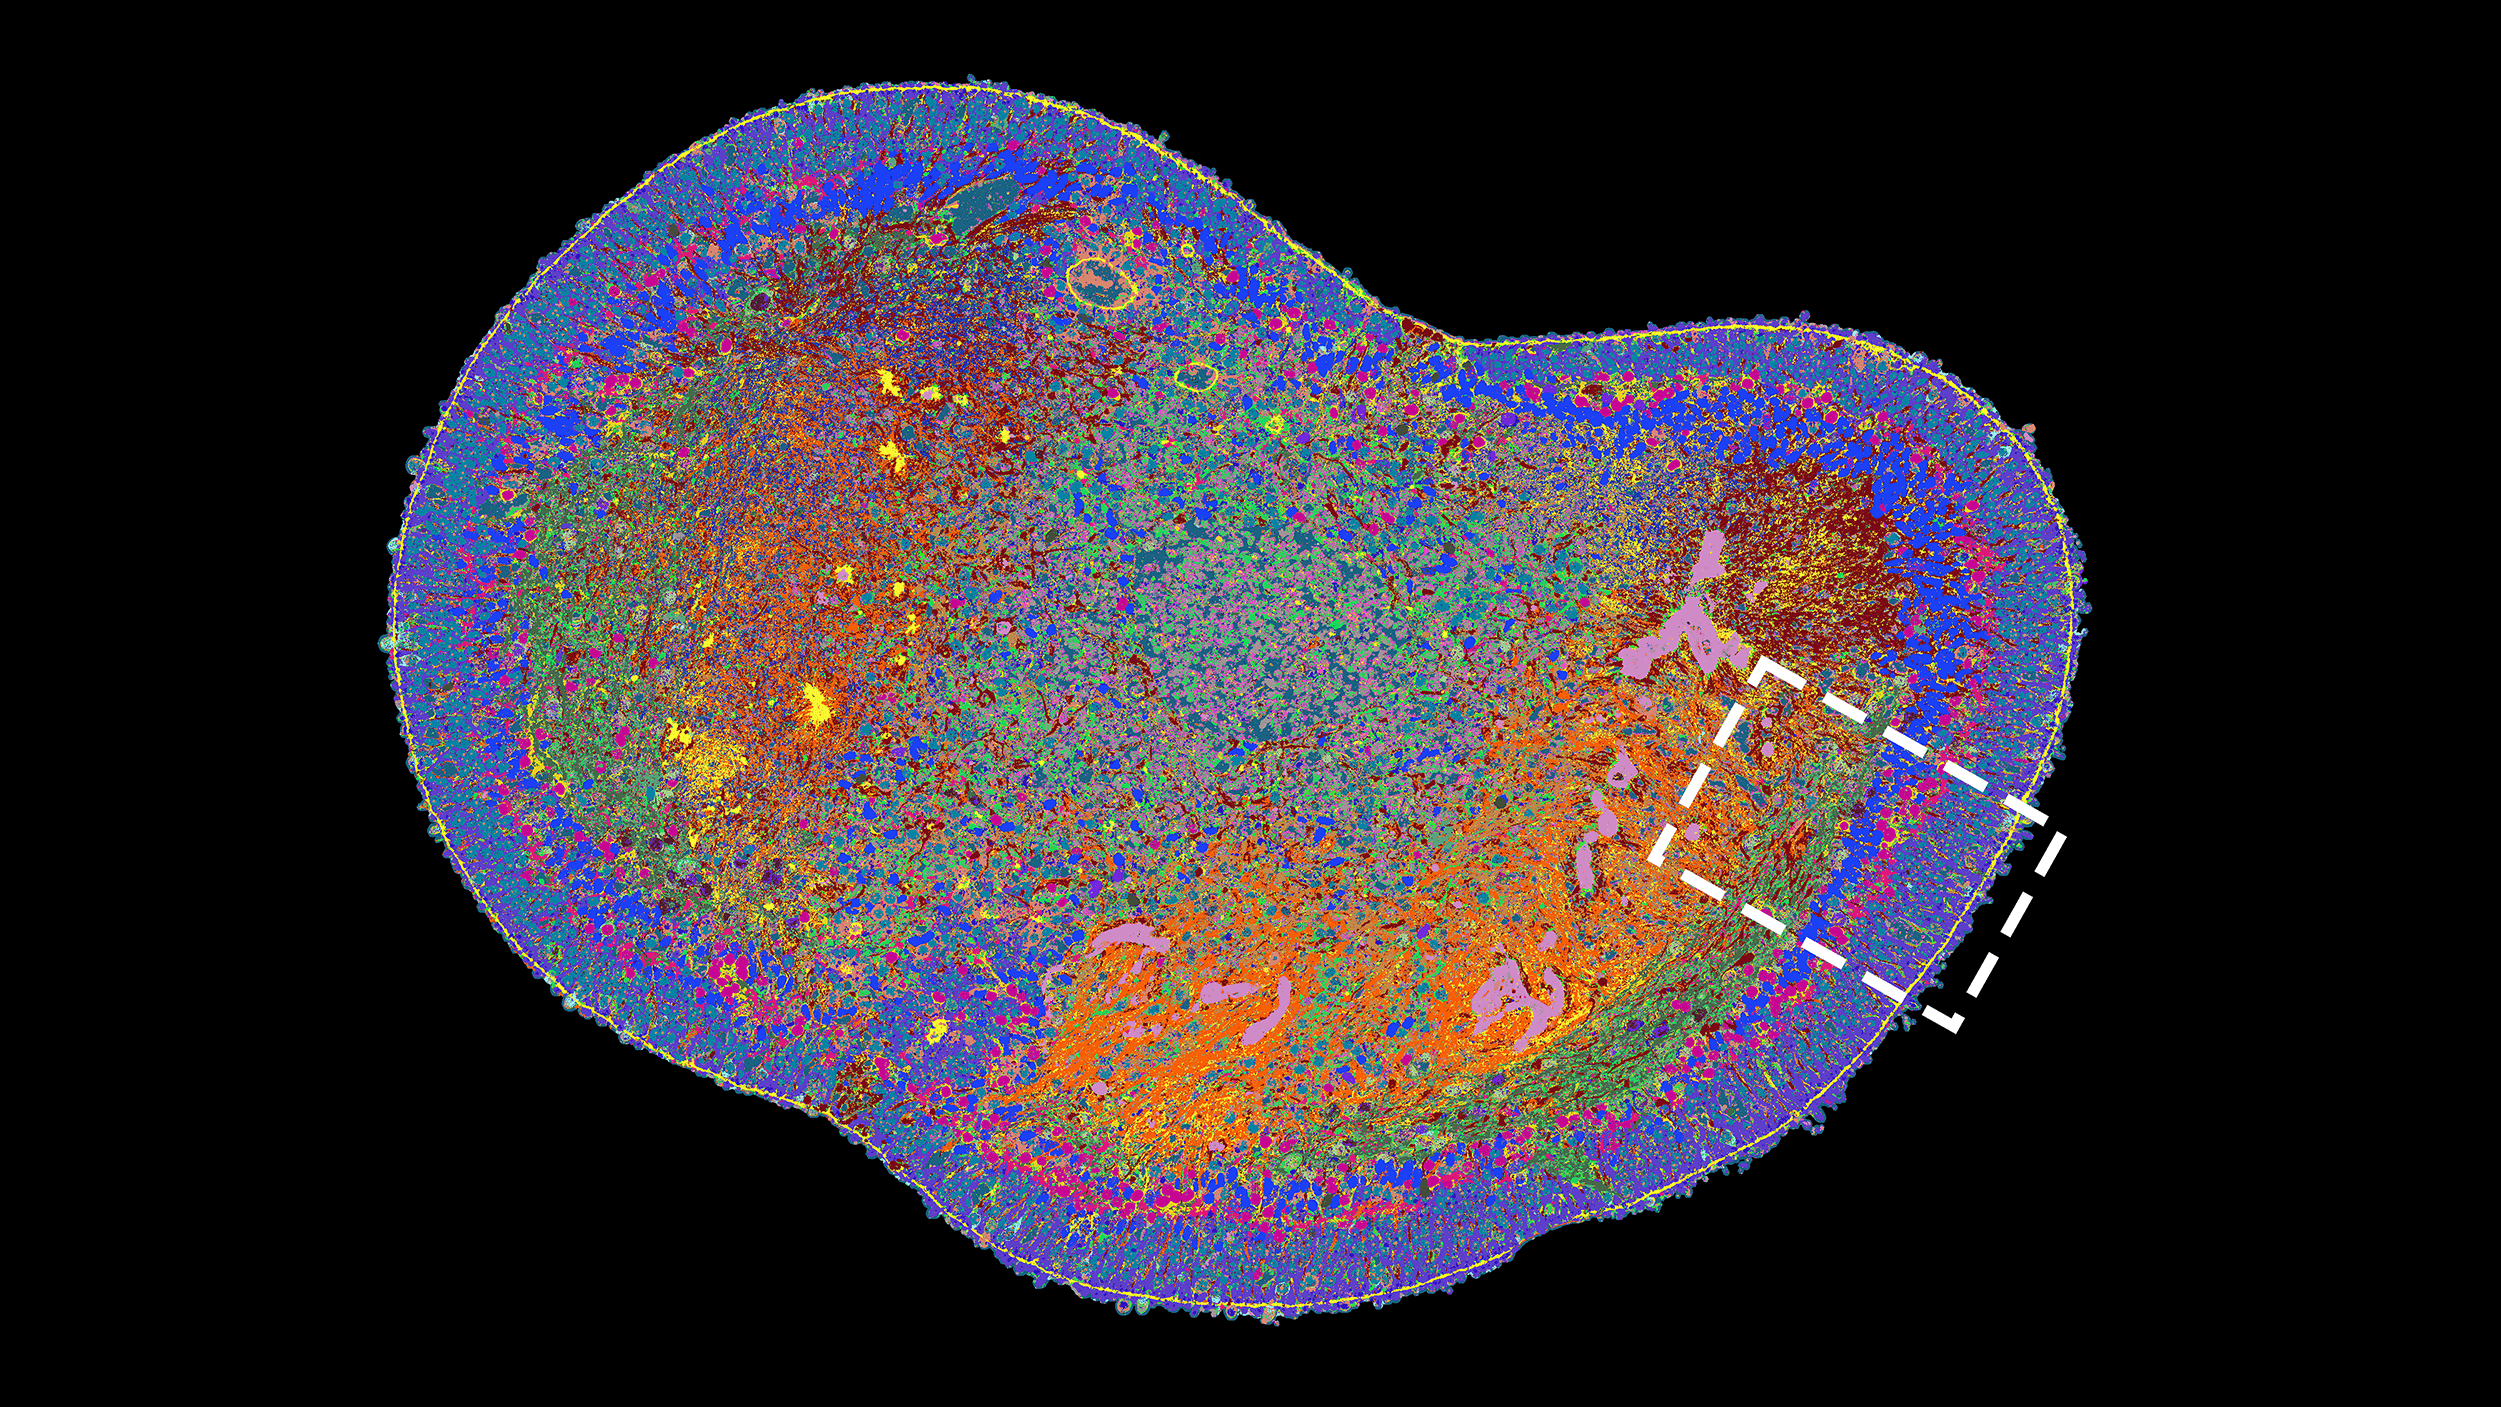 Vergr?sserte Ansicht: Querschnitt eines ganzen Netzhaut-Organoids. Unterschiedliche Proteine sind mit unterschiedlichen Farben sichtbar gemacht.